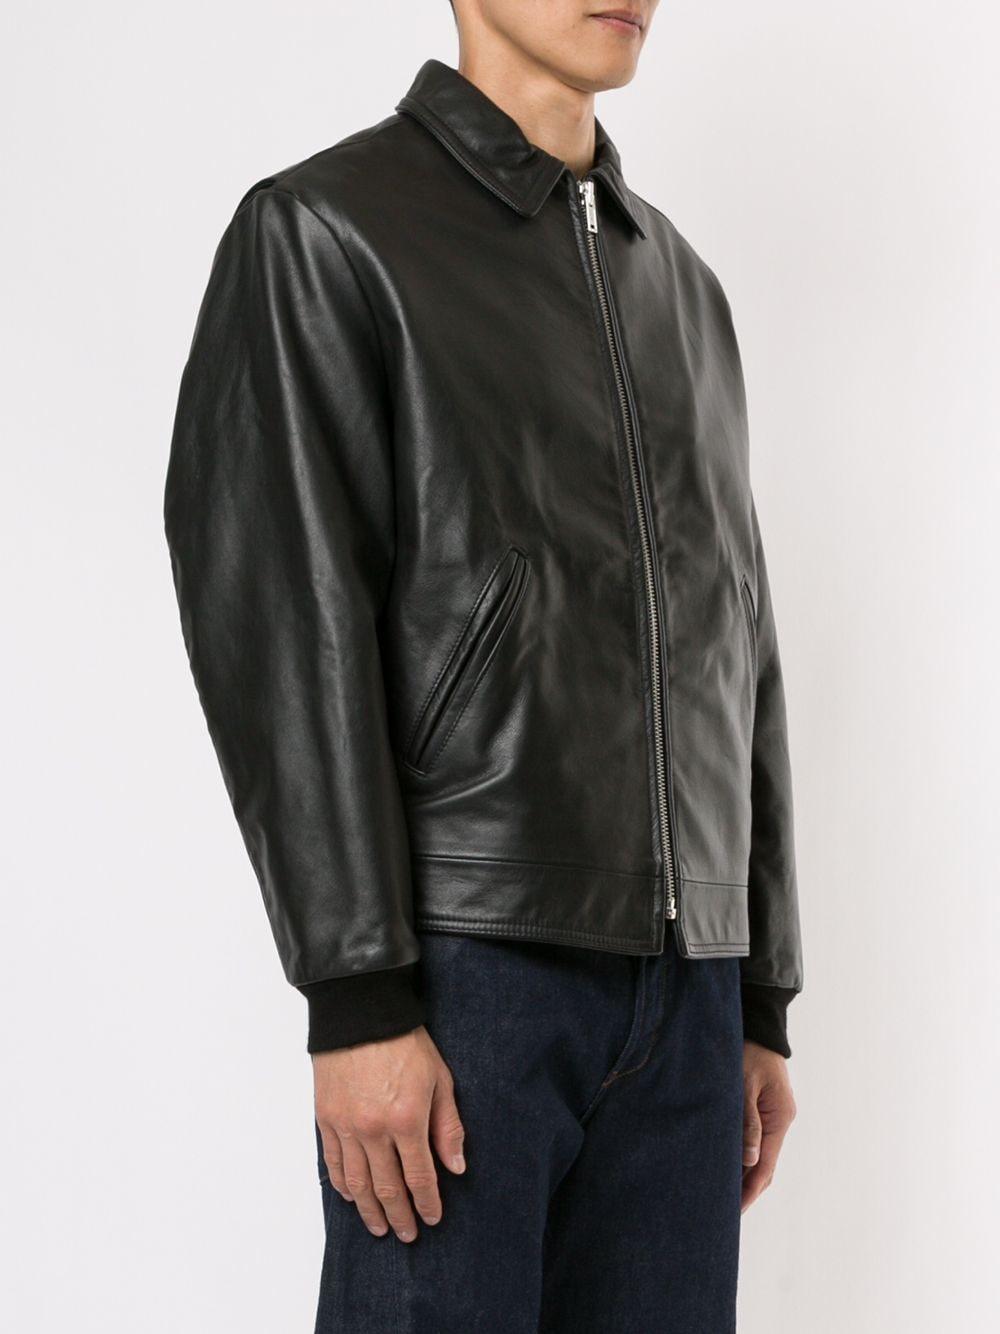 Supreme Schott Leather Work Jacket Black